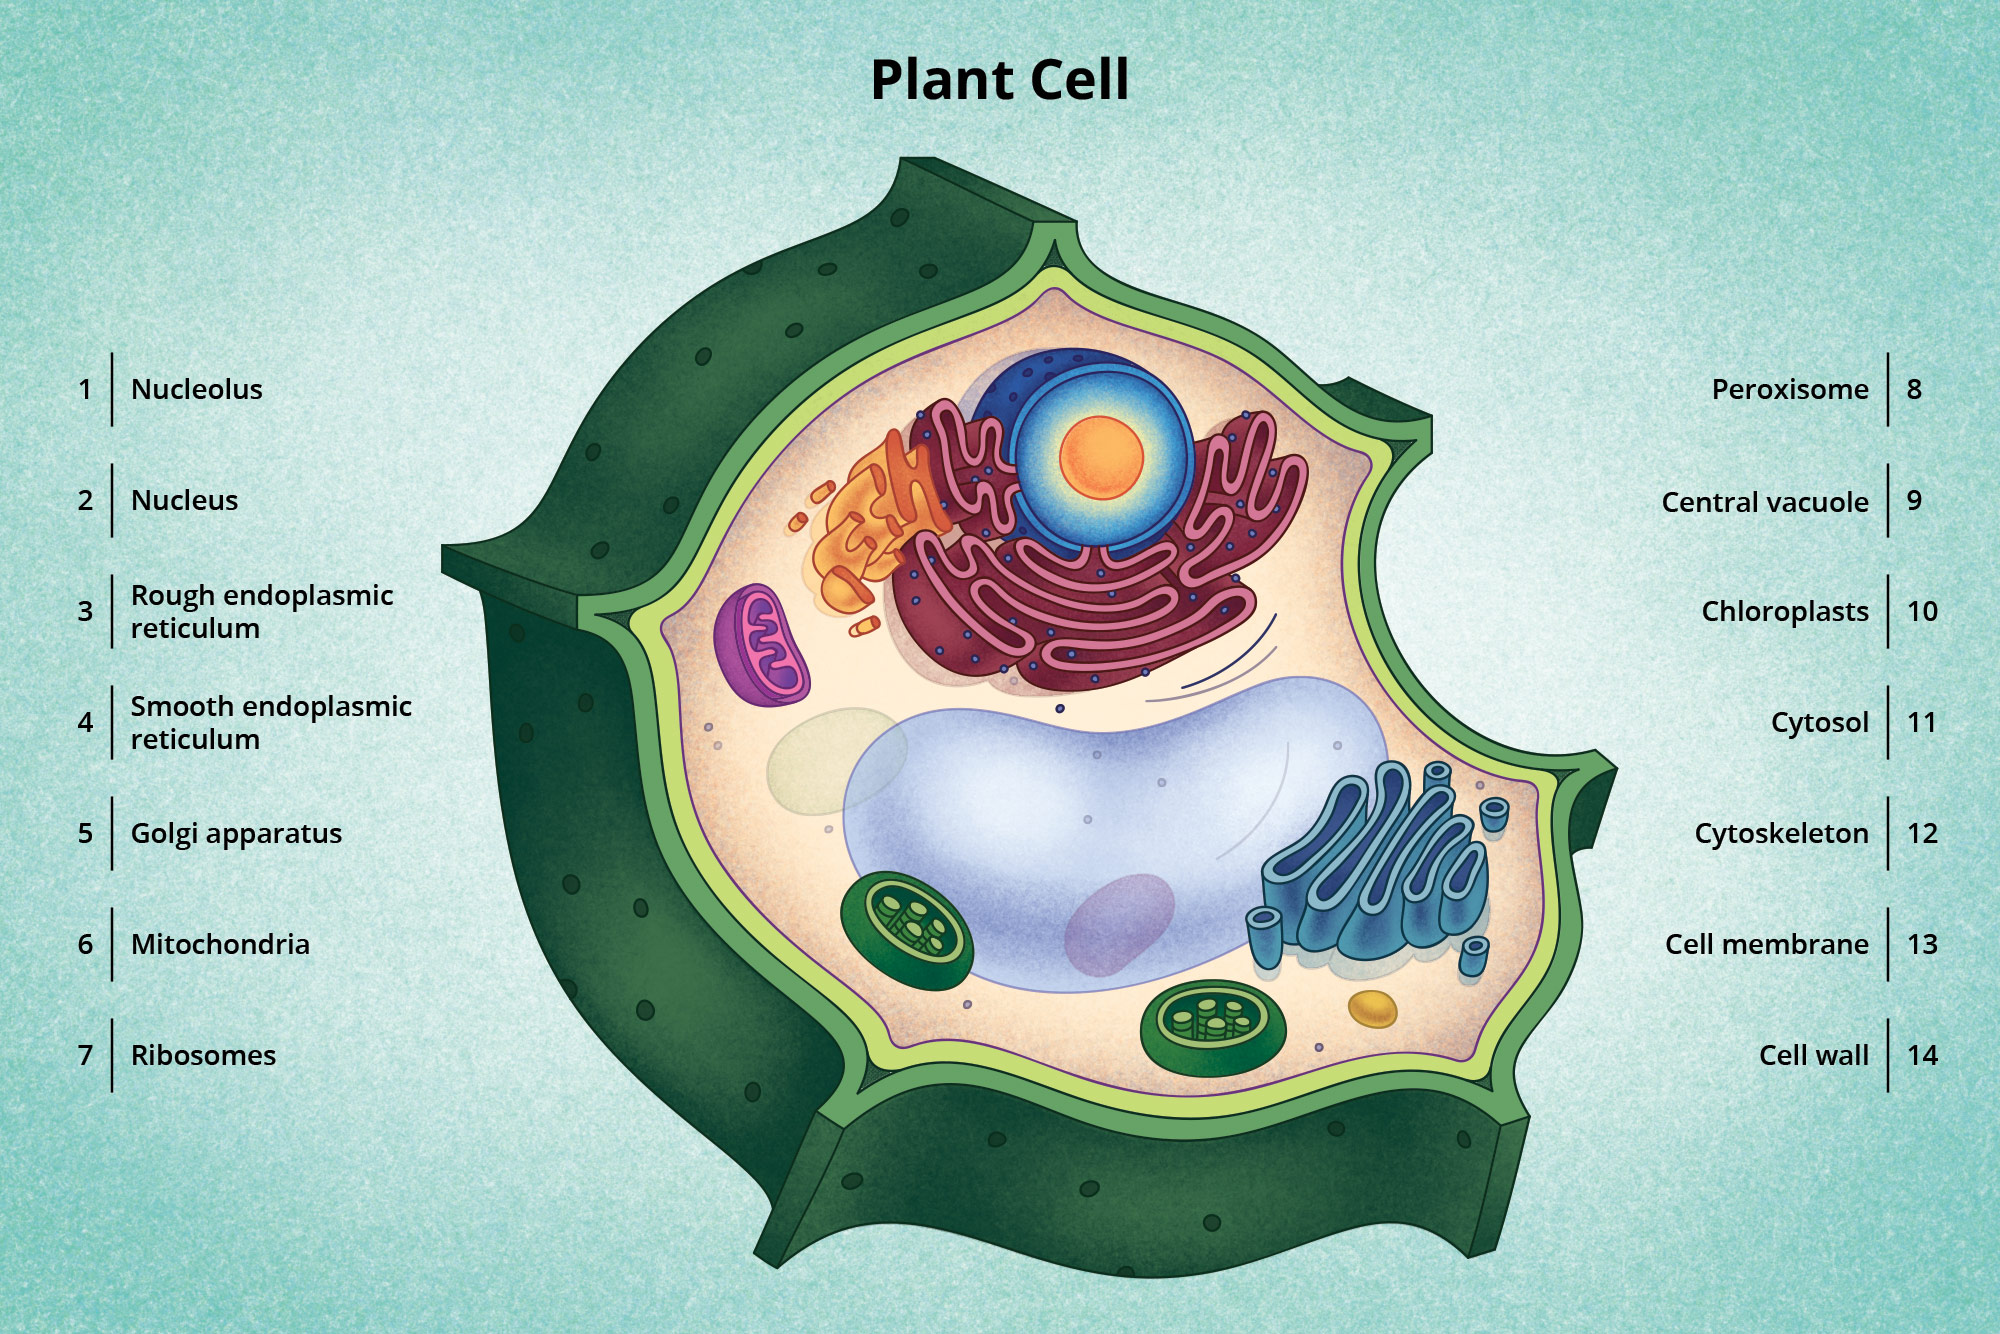 Visionlearning Plant Cell Illustration by Carl Avidano